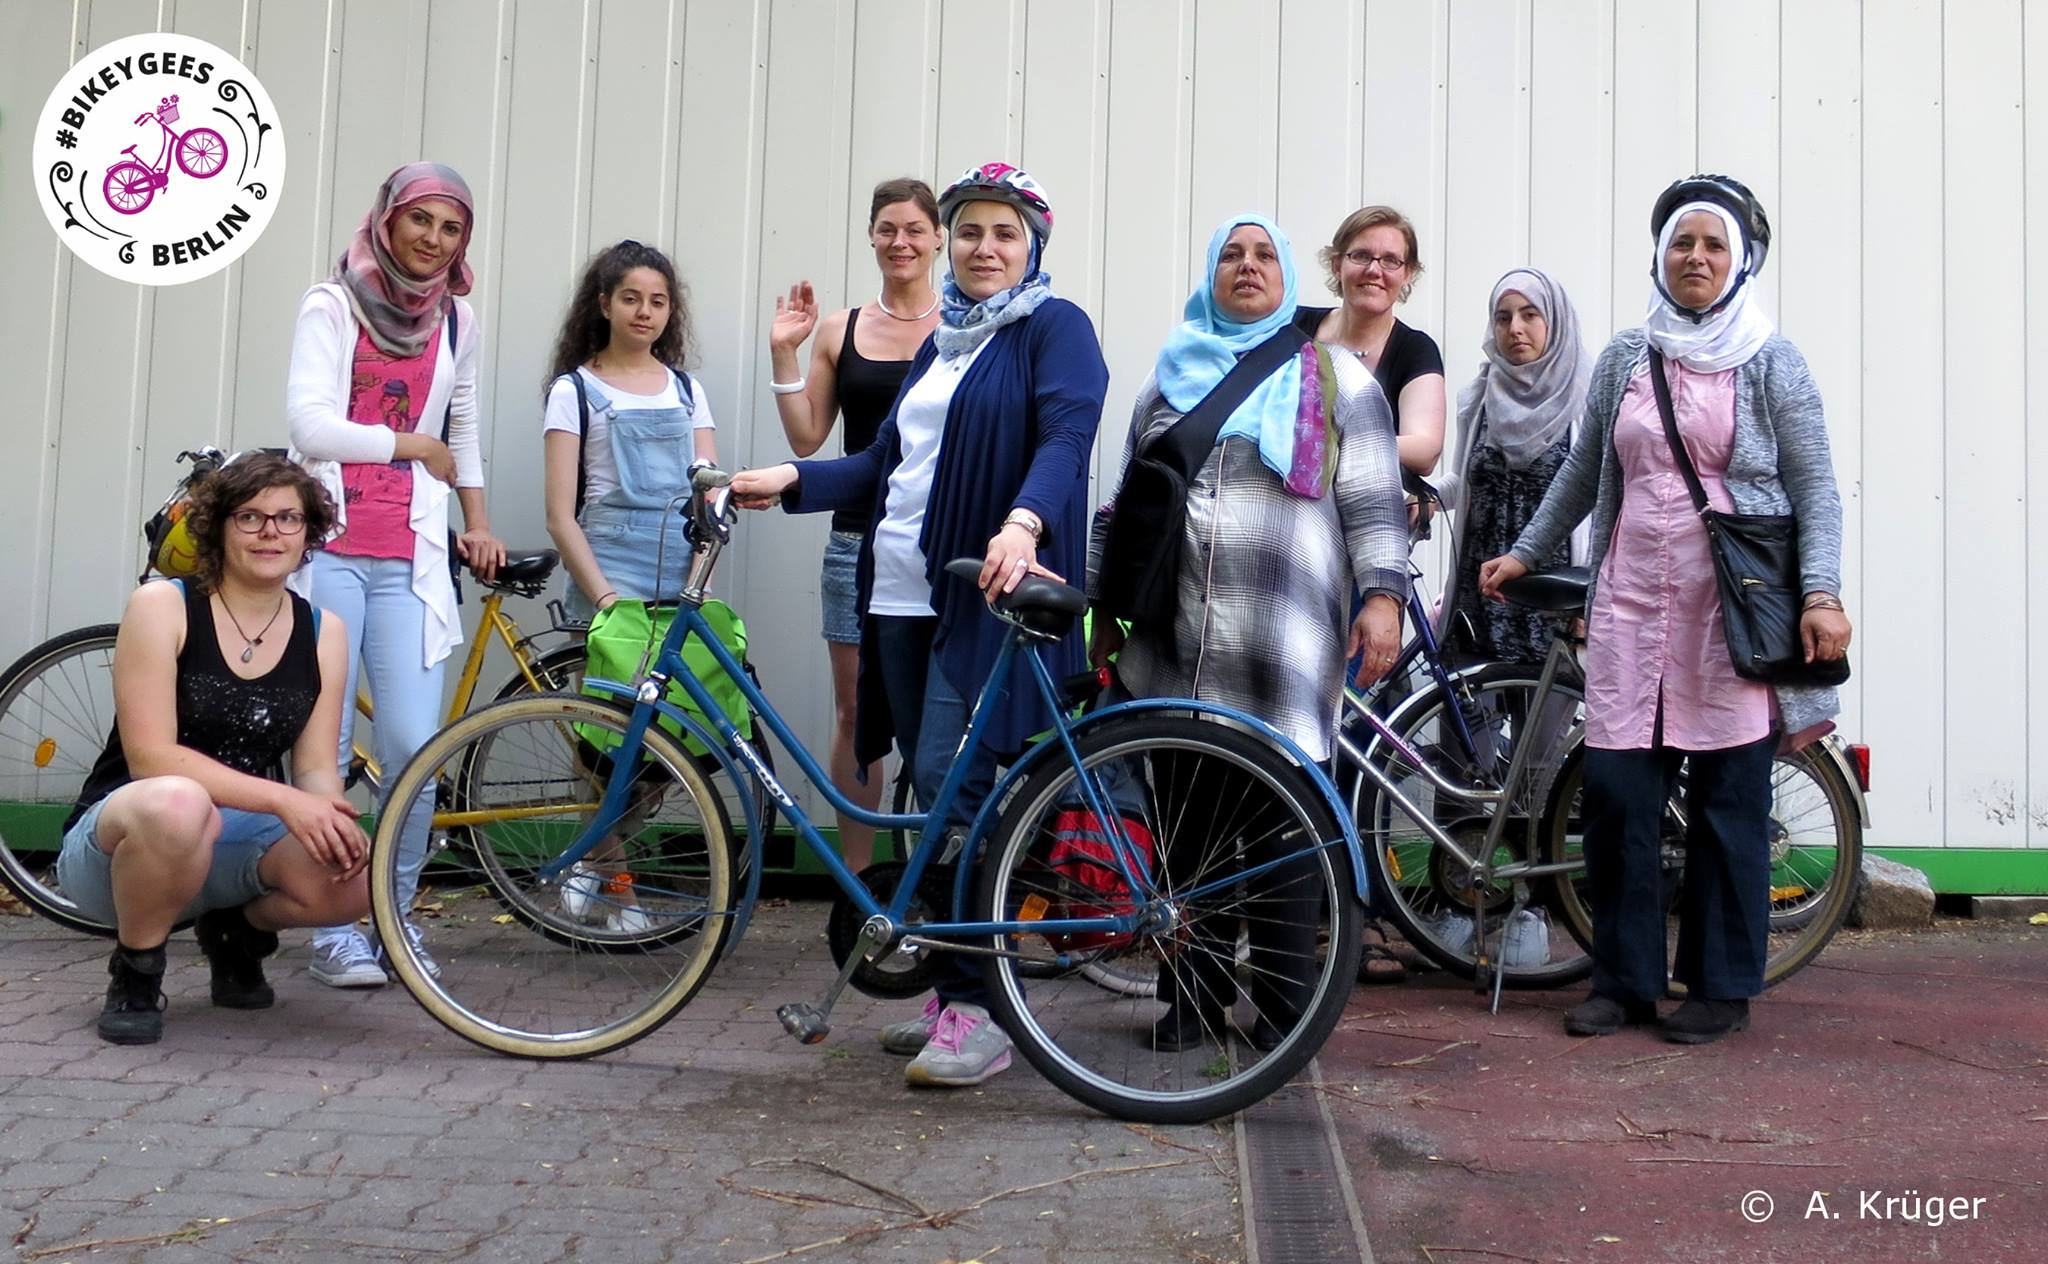 Mehrere Frauen stehen beisammen, einige mit Fahrrädern und Helmen, oben links im Bild das Logo der Organisation Bikeygees